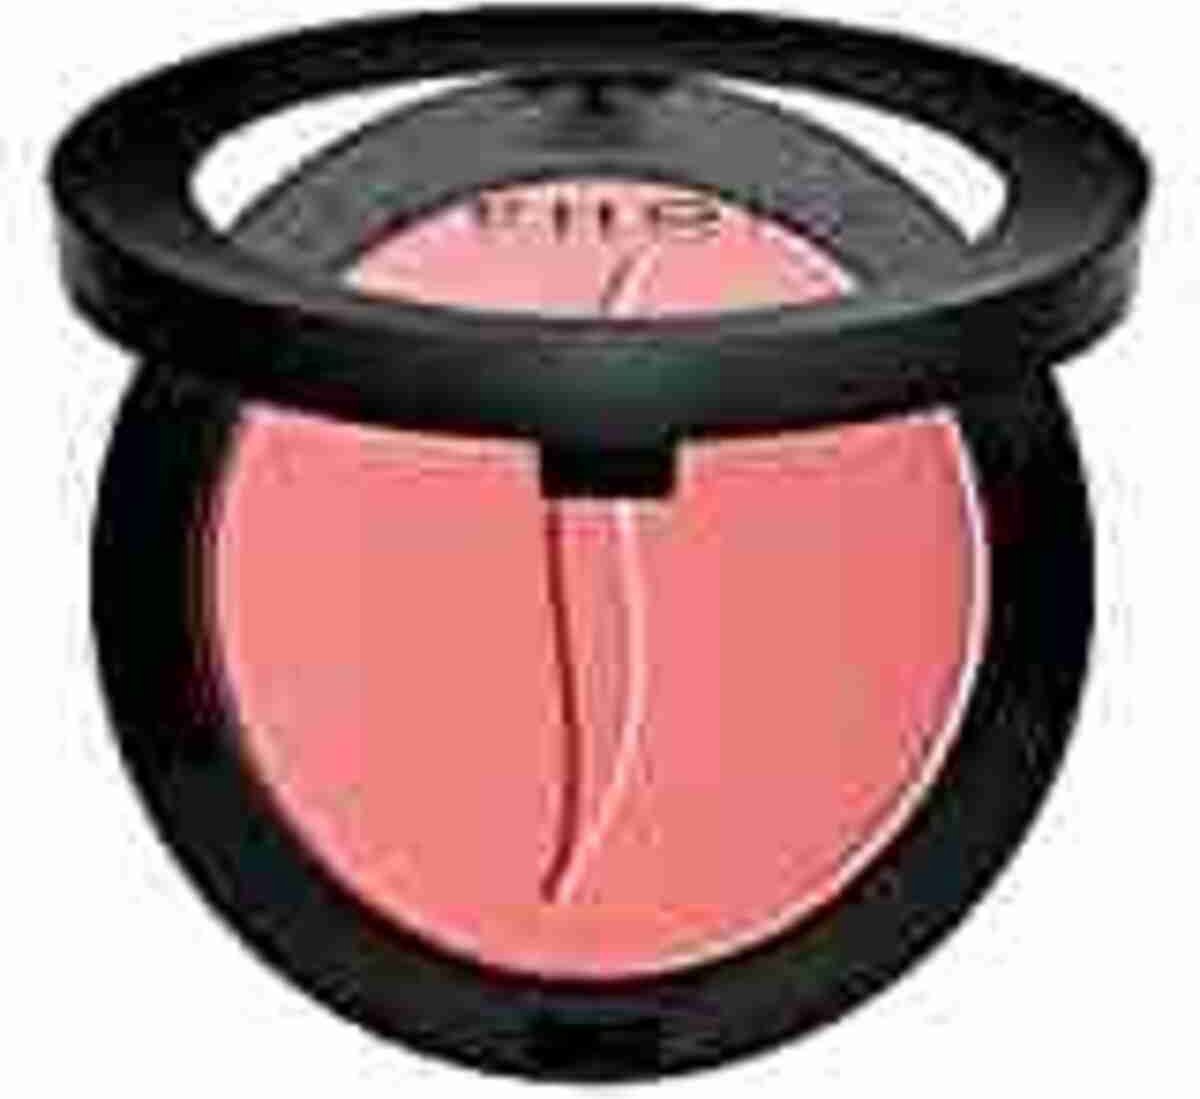 Sephora Blush Romantic Rose (Matte Cool Rosey Pink)